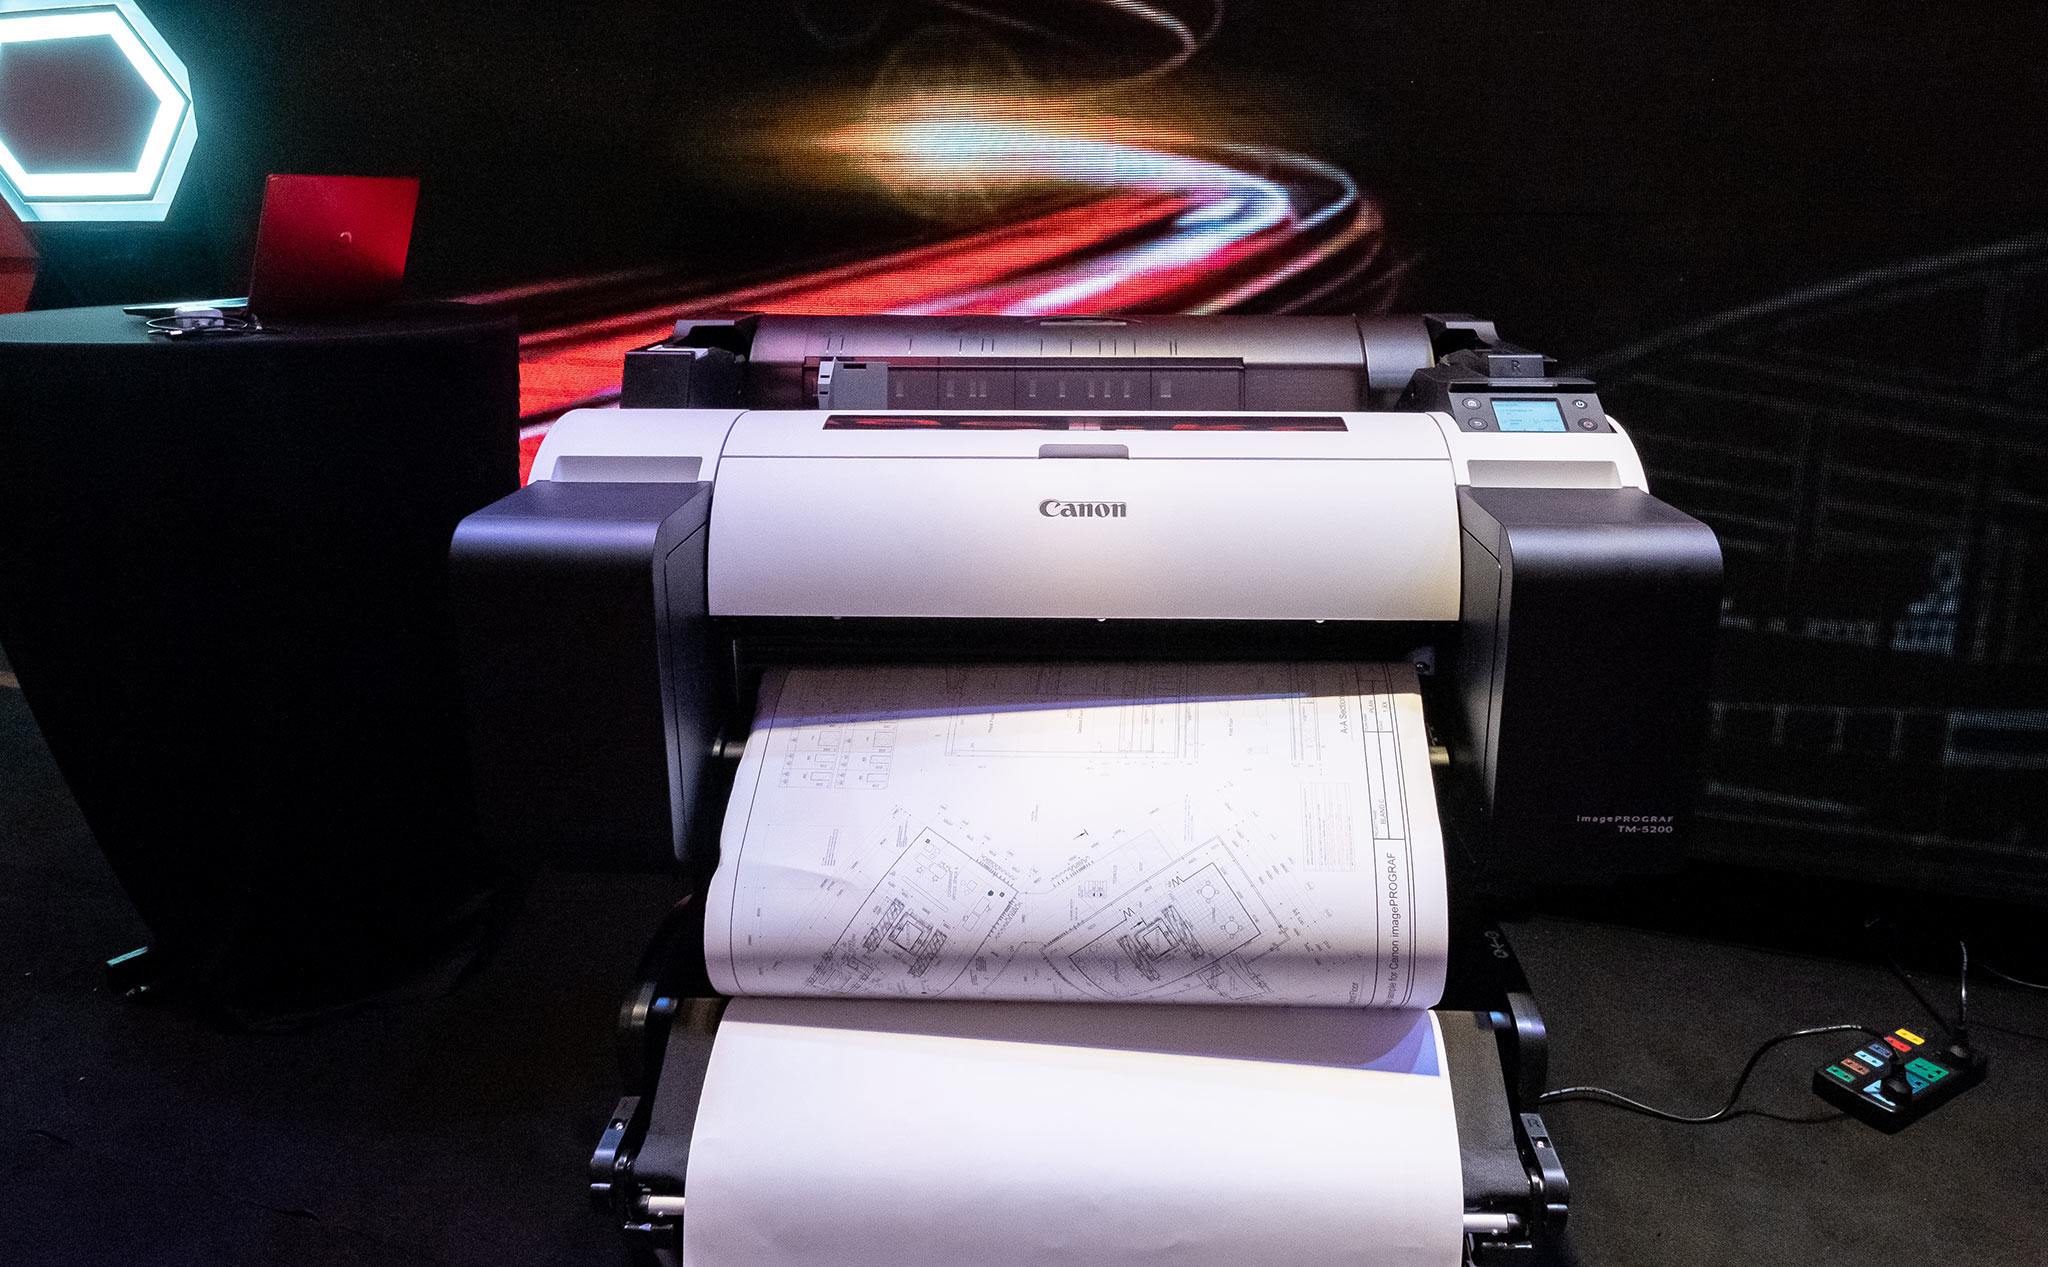 Canon giới thiệu dòng máy in khổ lớn imagePROGRAF TM dành cho doanh nghiệp & dịch vụ in ấn